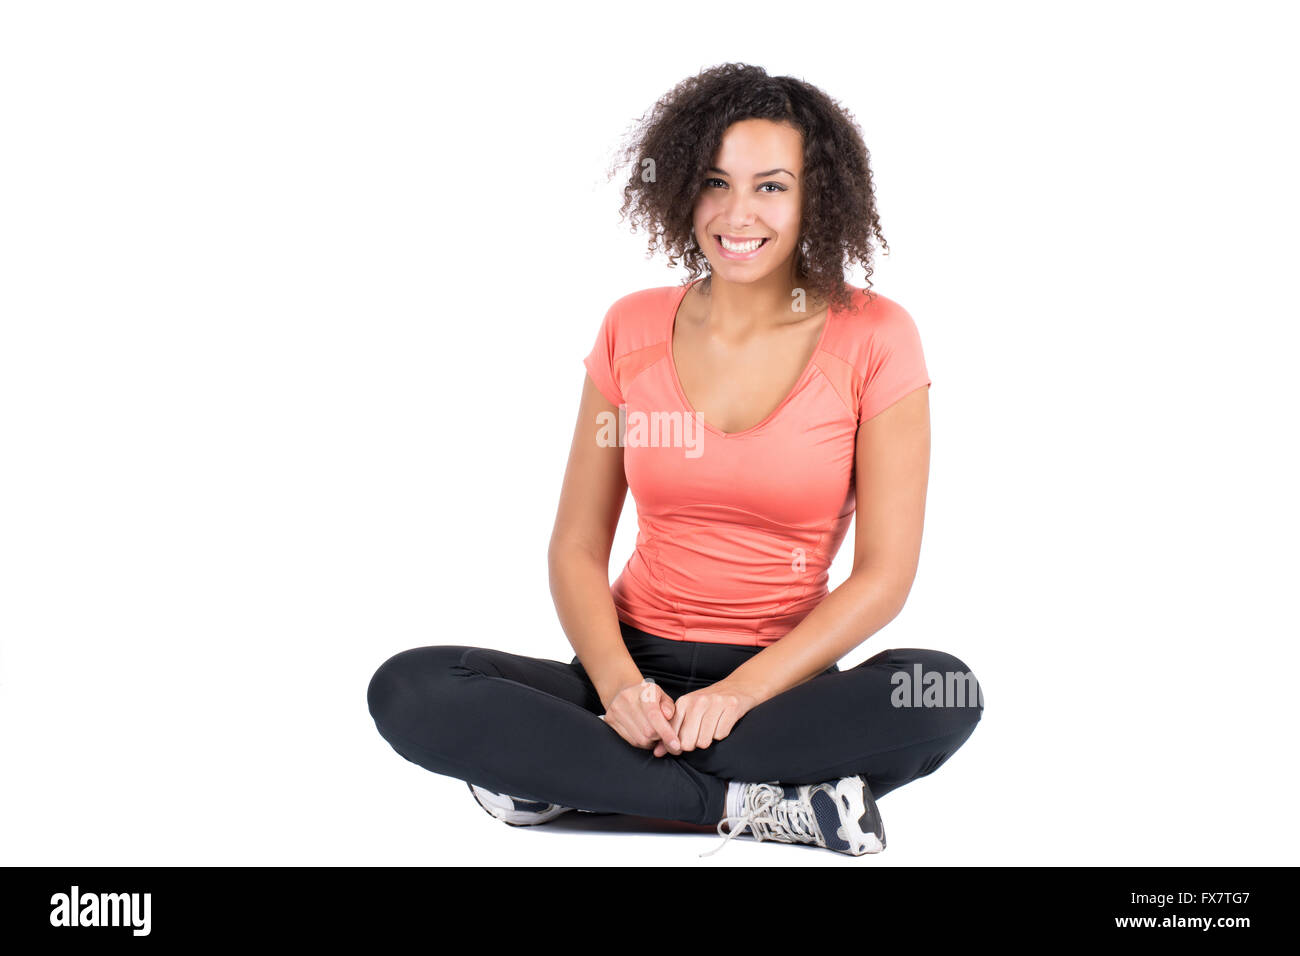 Schneiden Sie das Bild von einer jungen Frau mit Sportbekleidung, im Schneidersitz sitzt Stockfoto